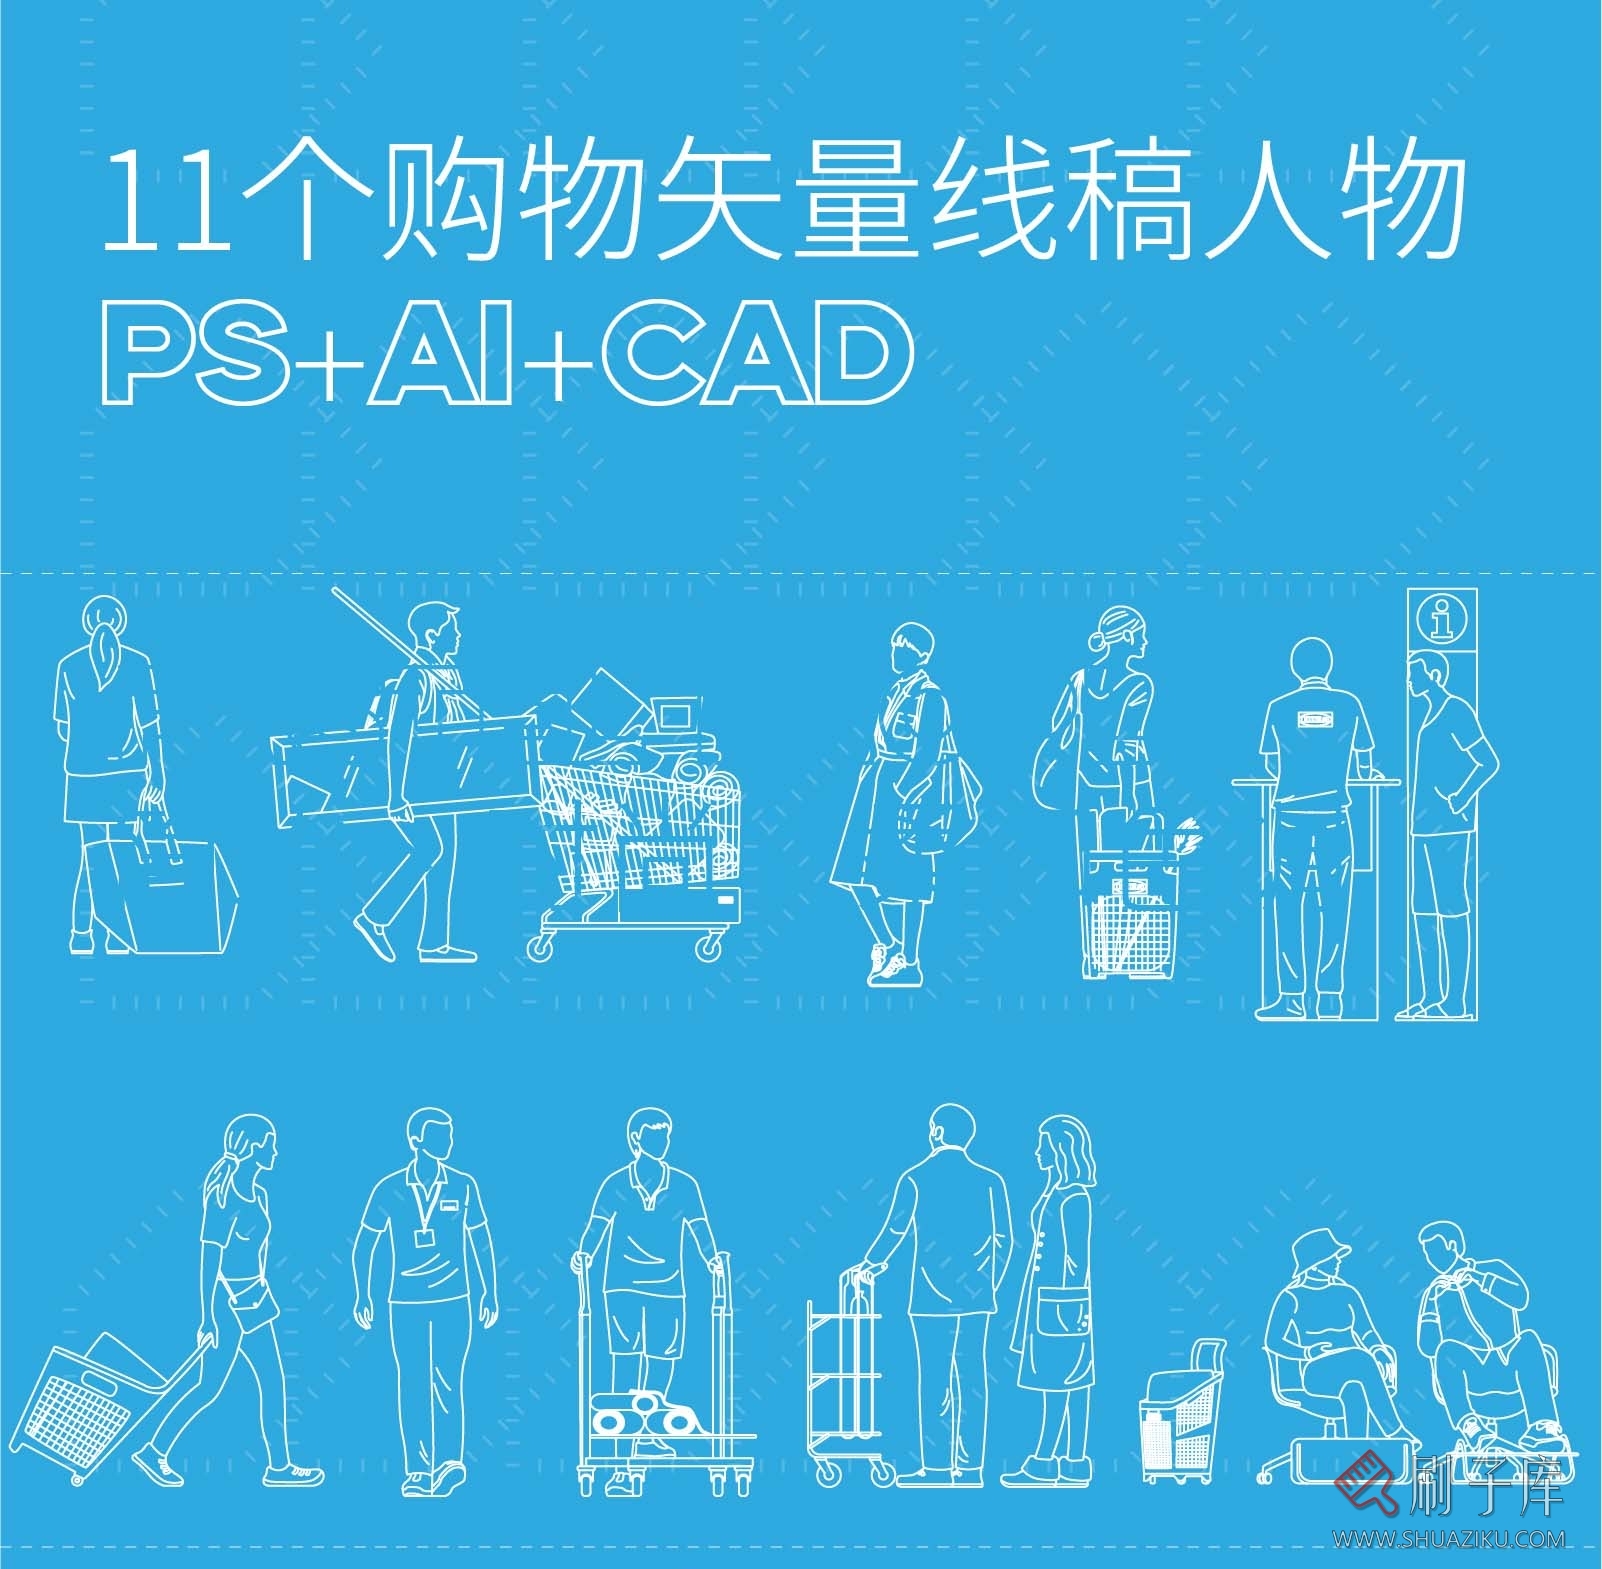 11个购物矢量线稿人物图集，PS+AI+CAD-刷子库